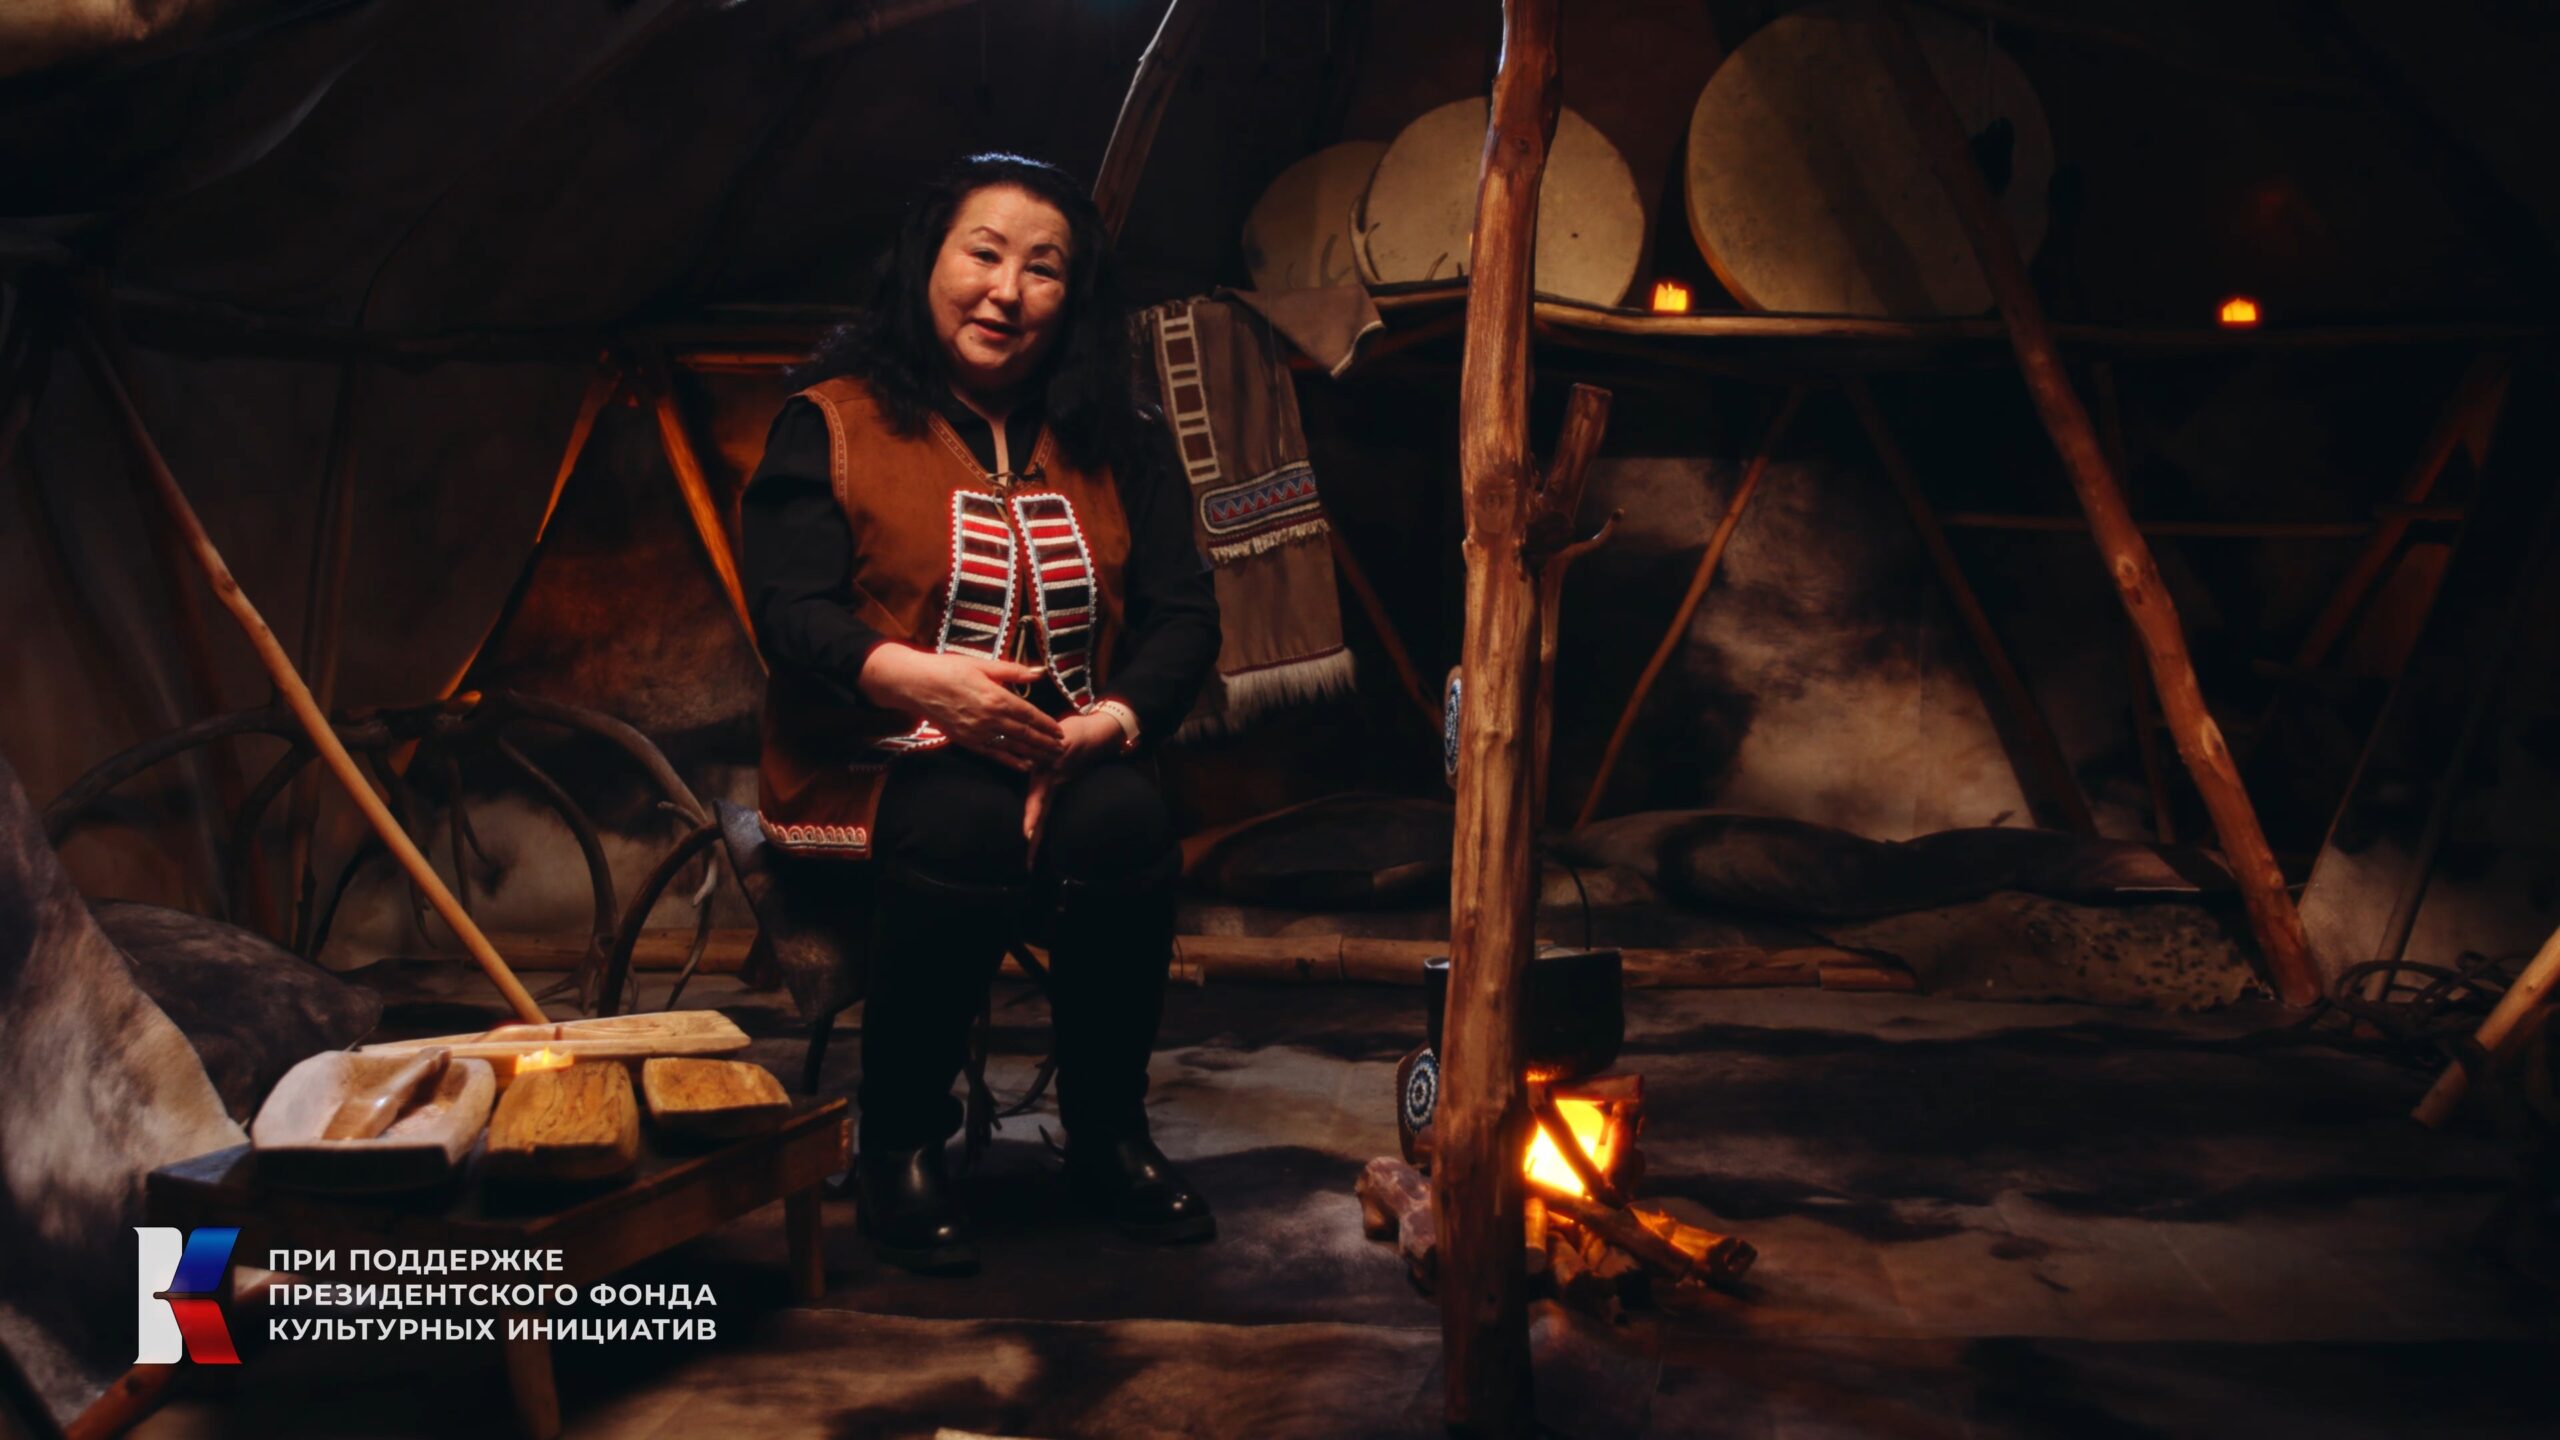 О культуре и быте эвенов рассказали на Камчатке в формате видеолекции